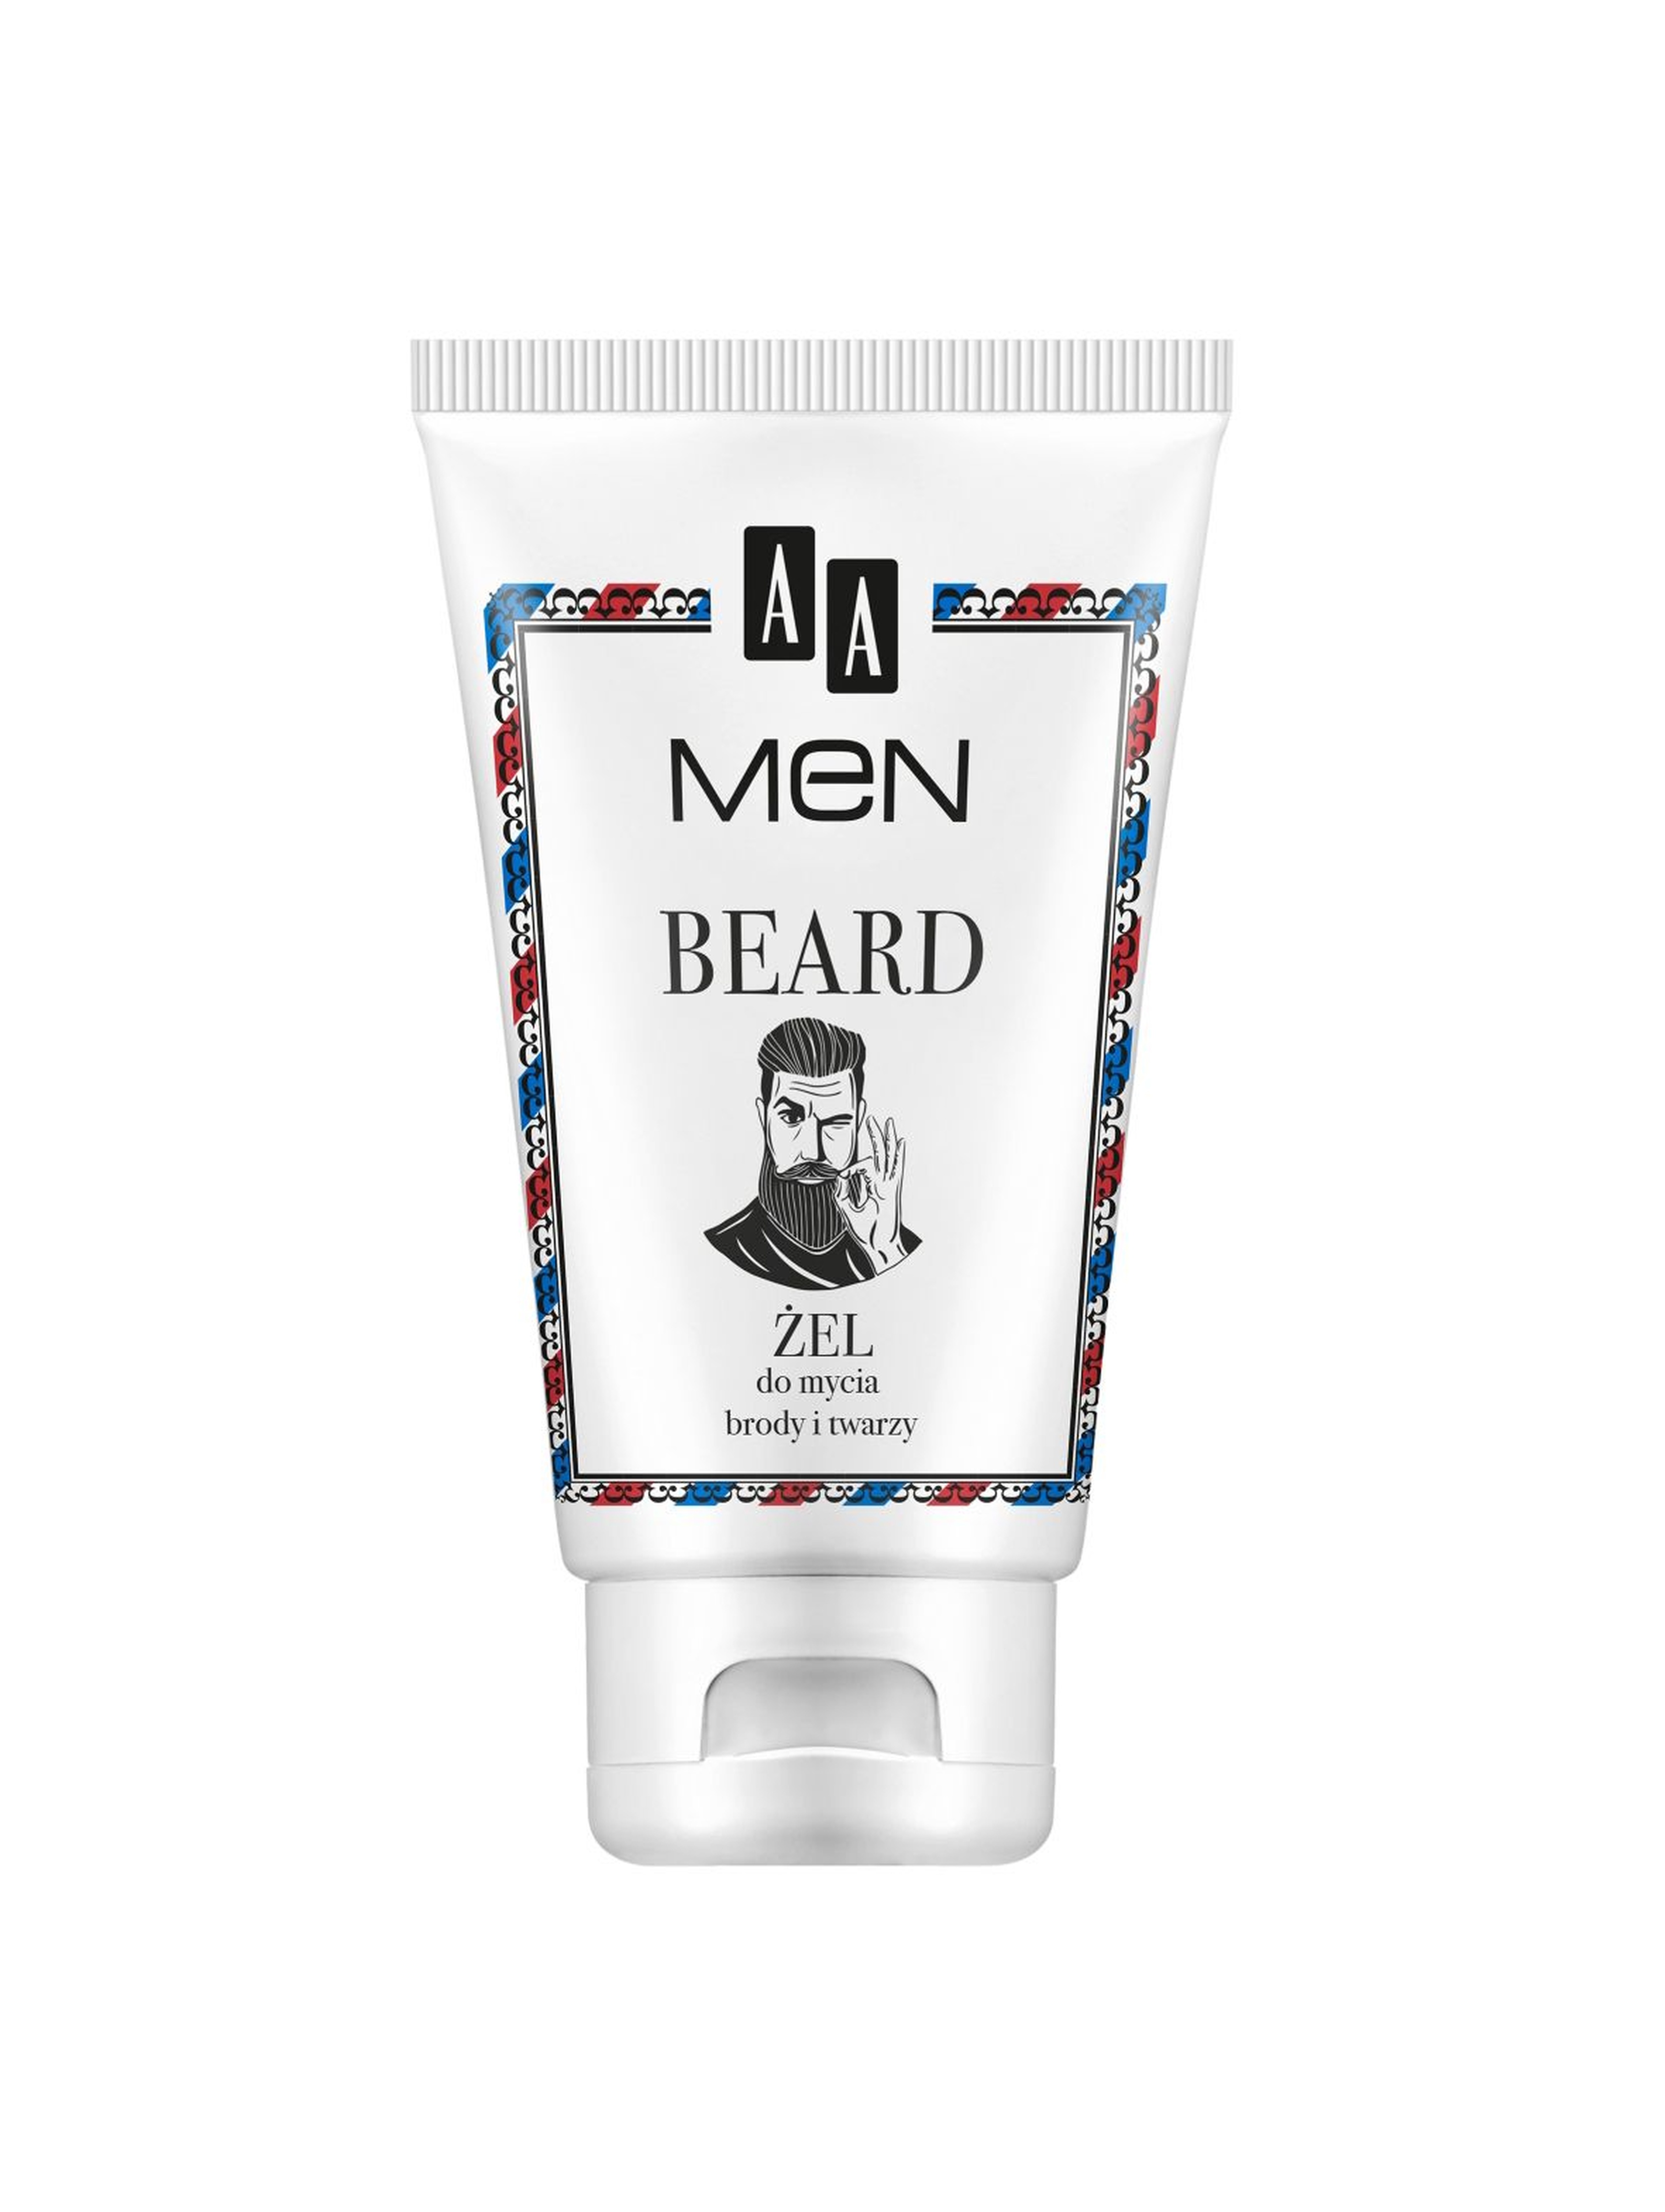 AA Men Beard Żel do mycia brody i twarzy 100 ml